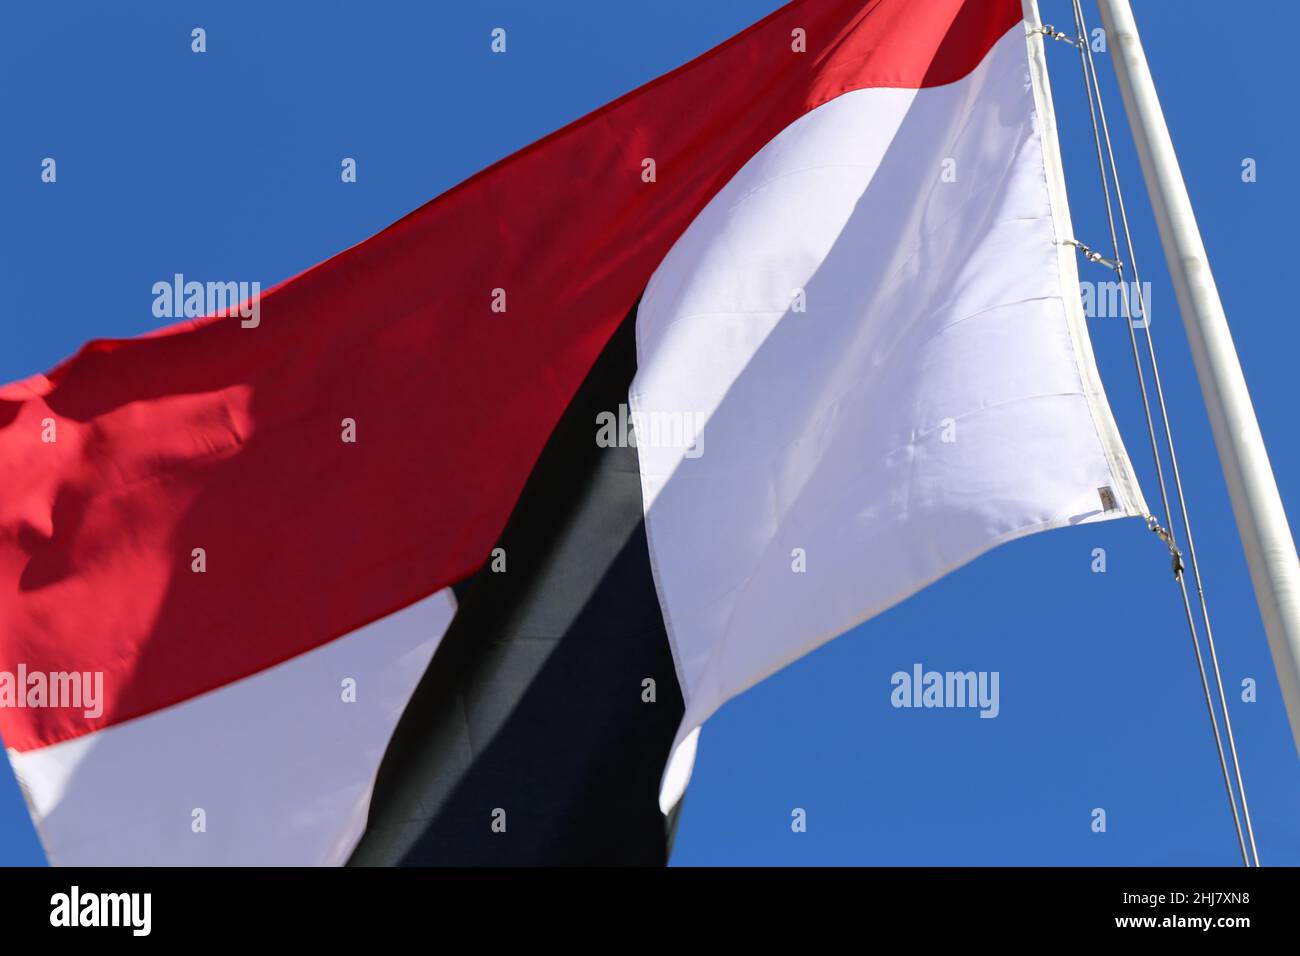 Bandiera rossa, bianca e nera che ondita nel vento. Fotografato durante una giornata estiva di sole in Svizzera. Cielo blu sullo sfondo. Foto Stock